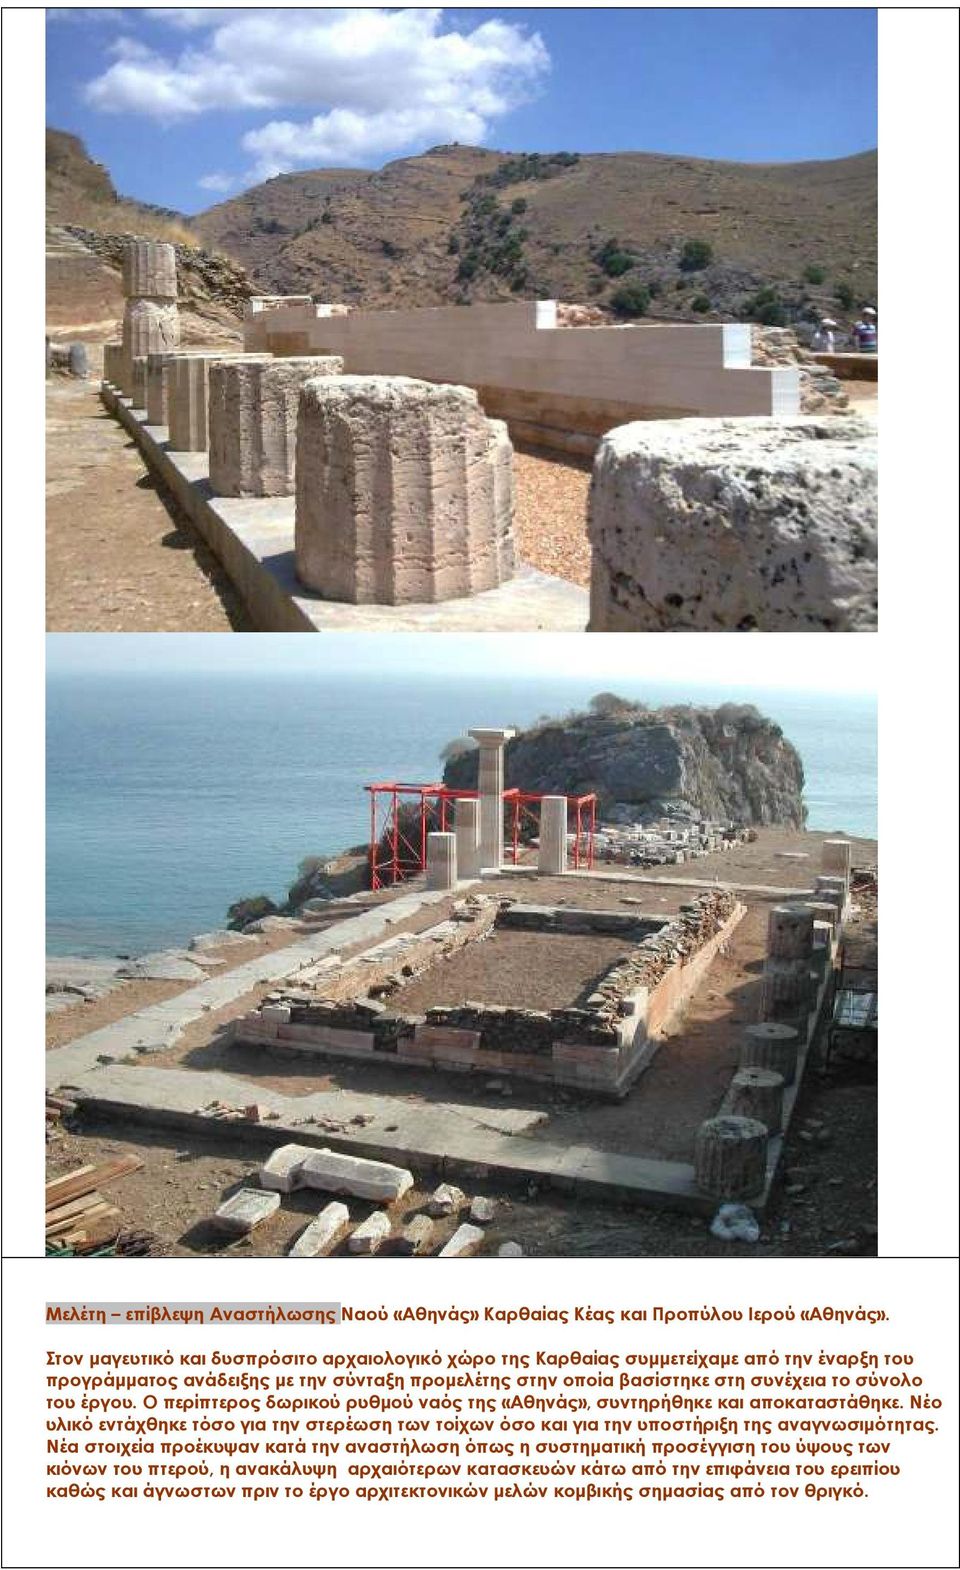 σύνολο του έργου. Ο περίπτερος δωρικού ρυθµού ναός της «Αθηνάς», συντηρήθηκε και αποκαταστάθηκε.